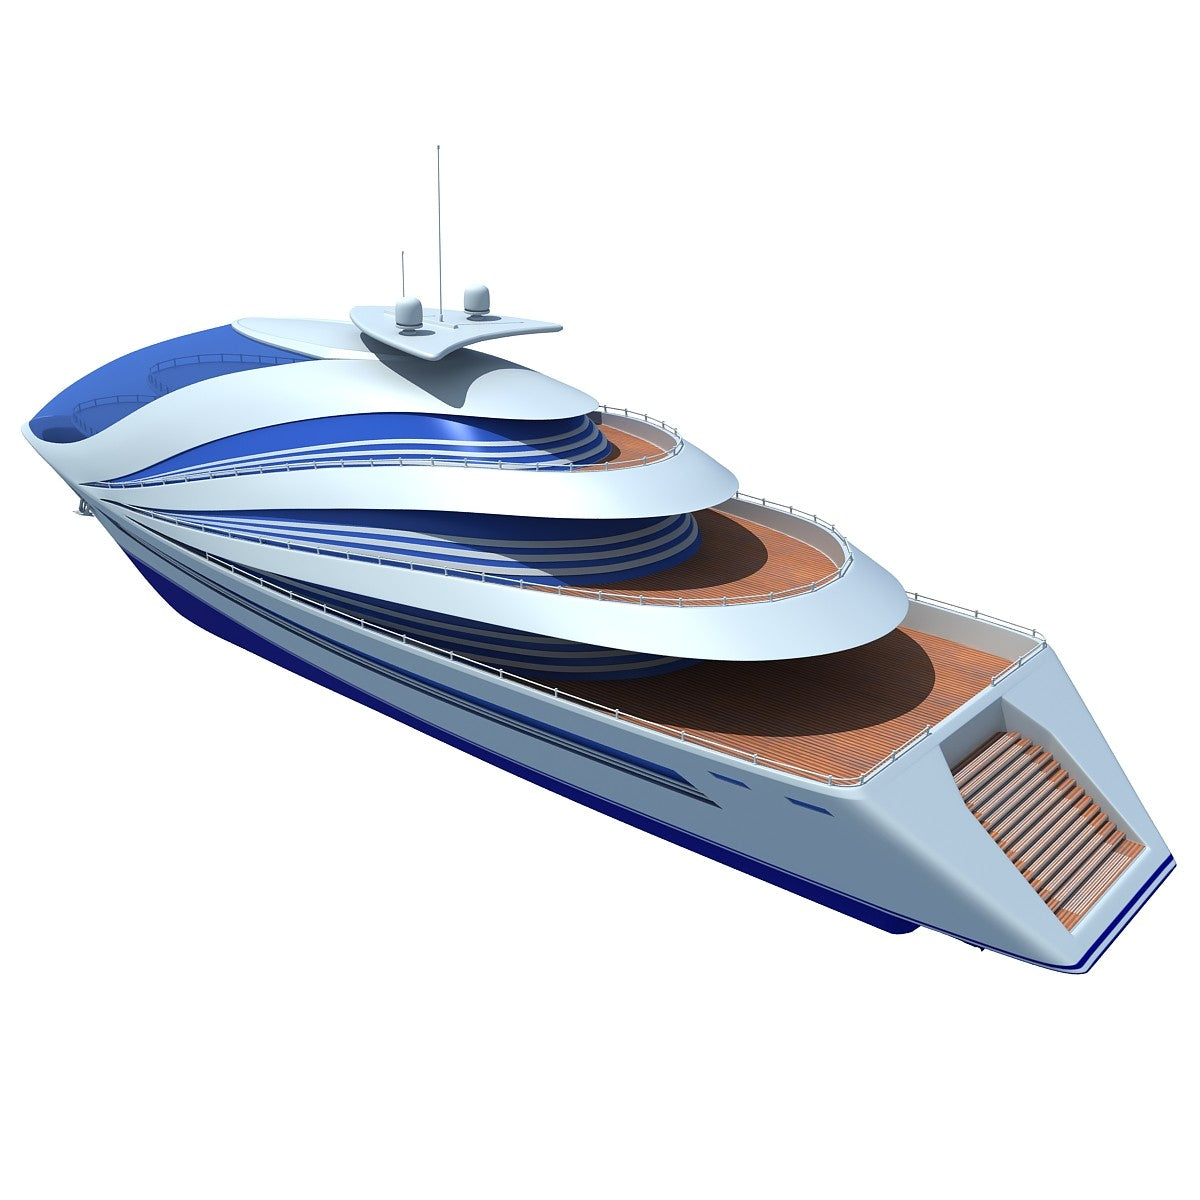 Luxury Yacht 3D Models